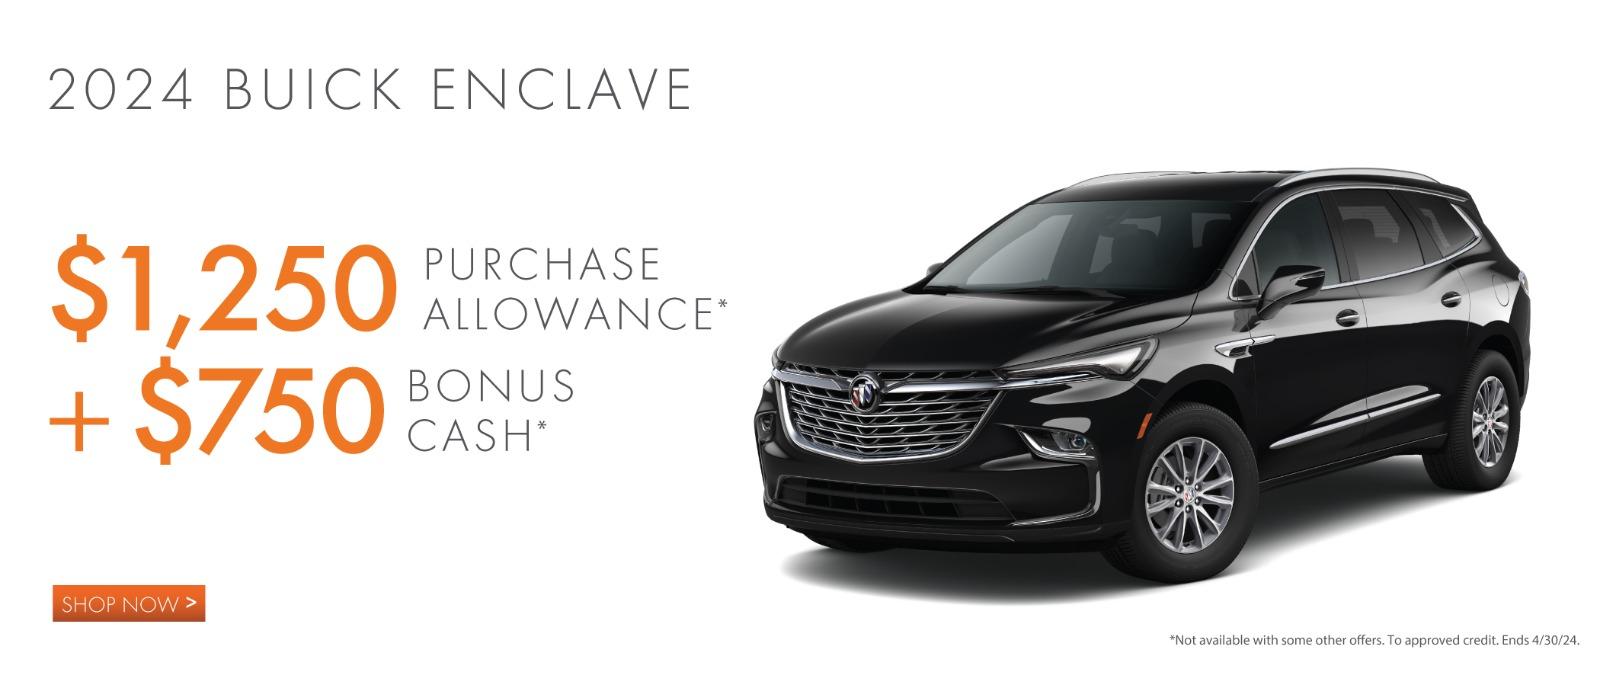 2023 Buick Enclave $1,250 Purchase Allowance +$750 Bonus Cash